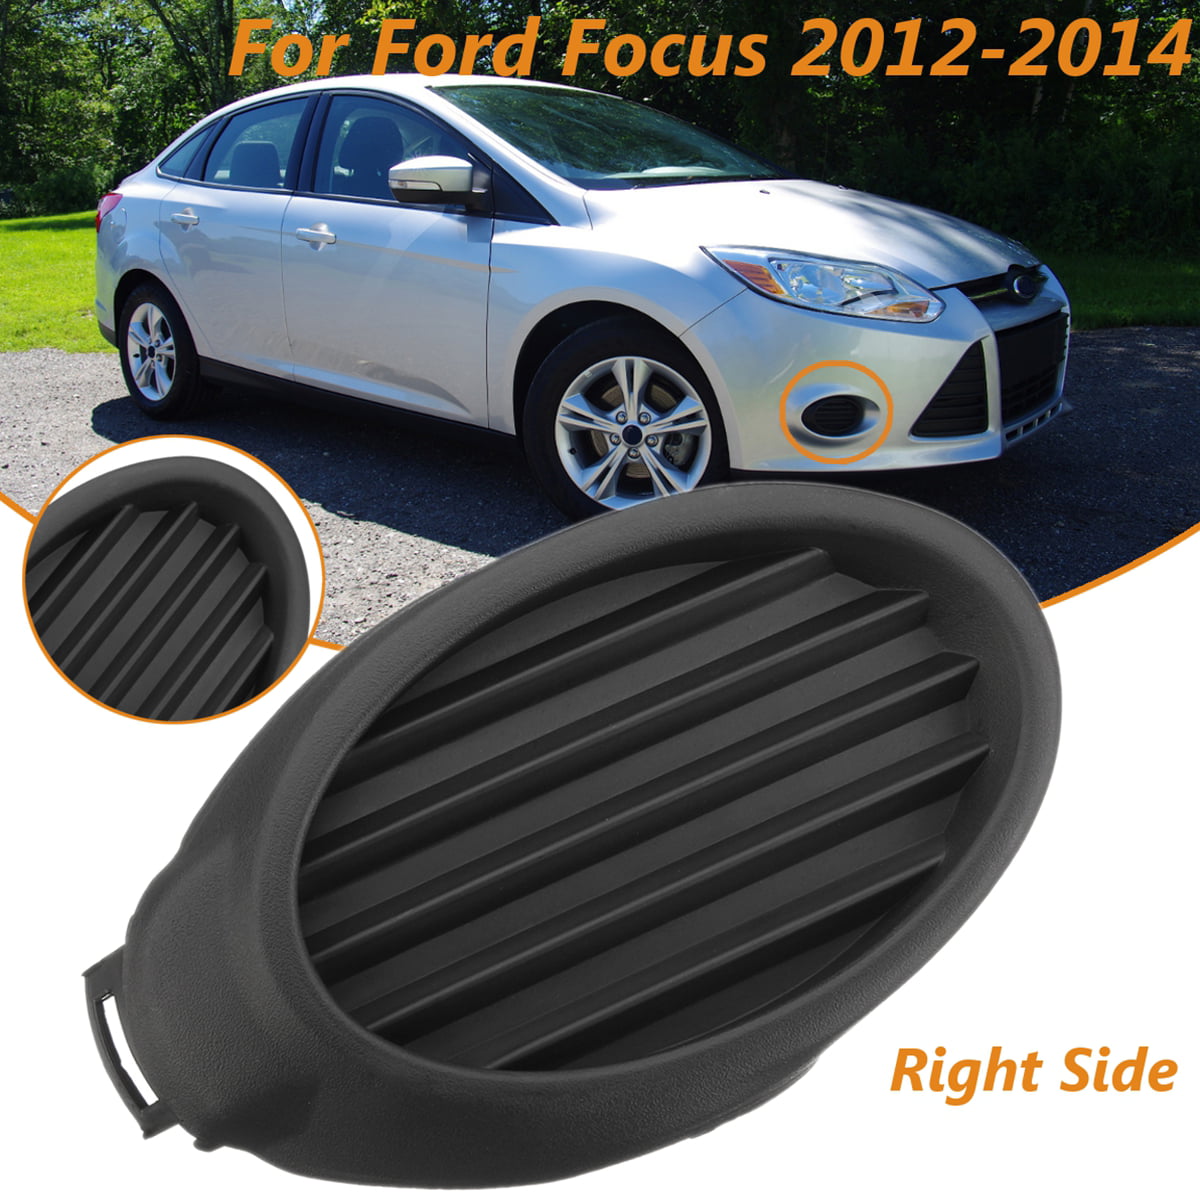 2Psc Front Chrome Fog light Lamp Cover Bezel Housing for Ford Focus 2012-2014 